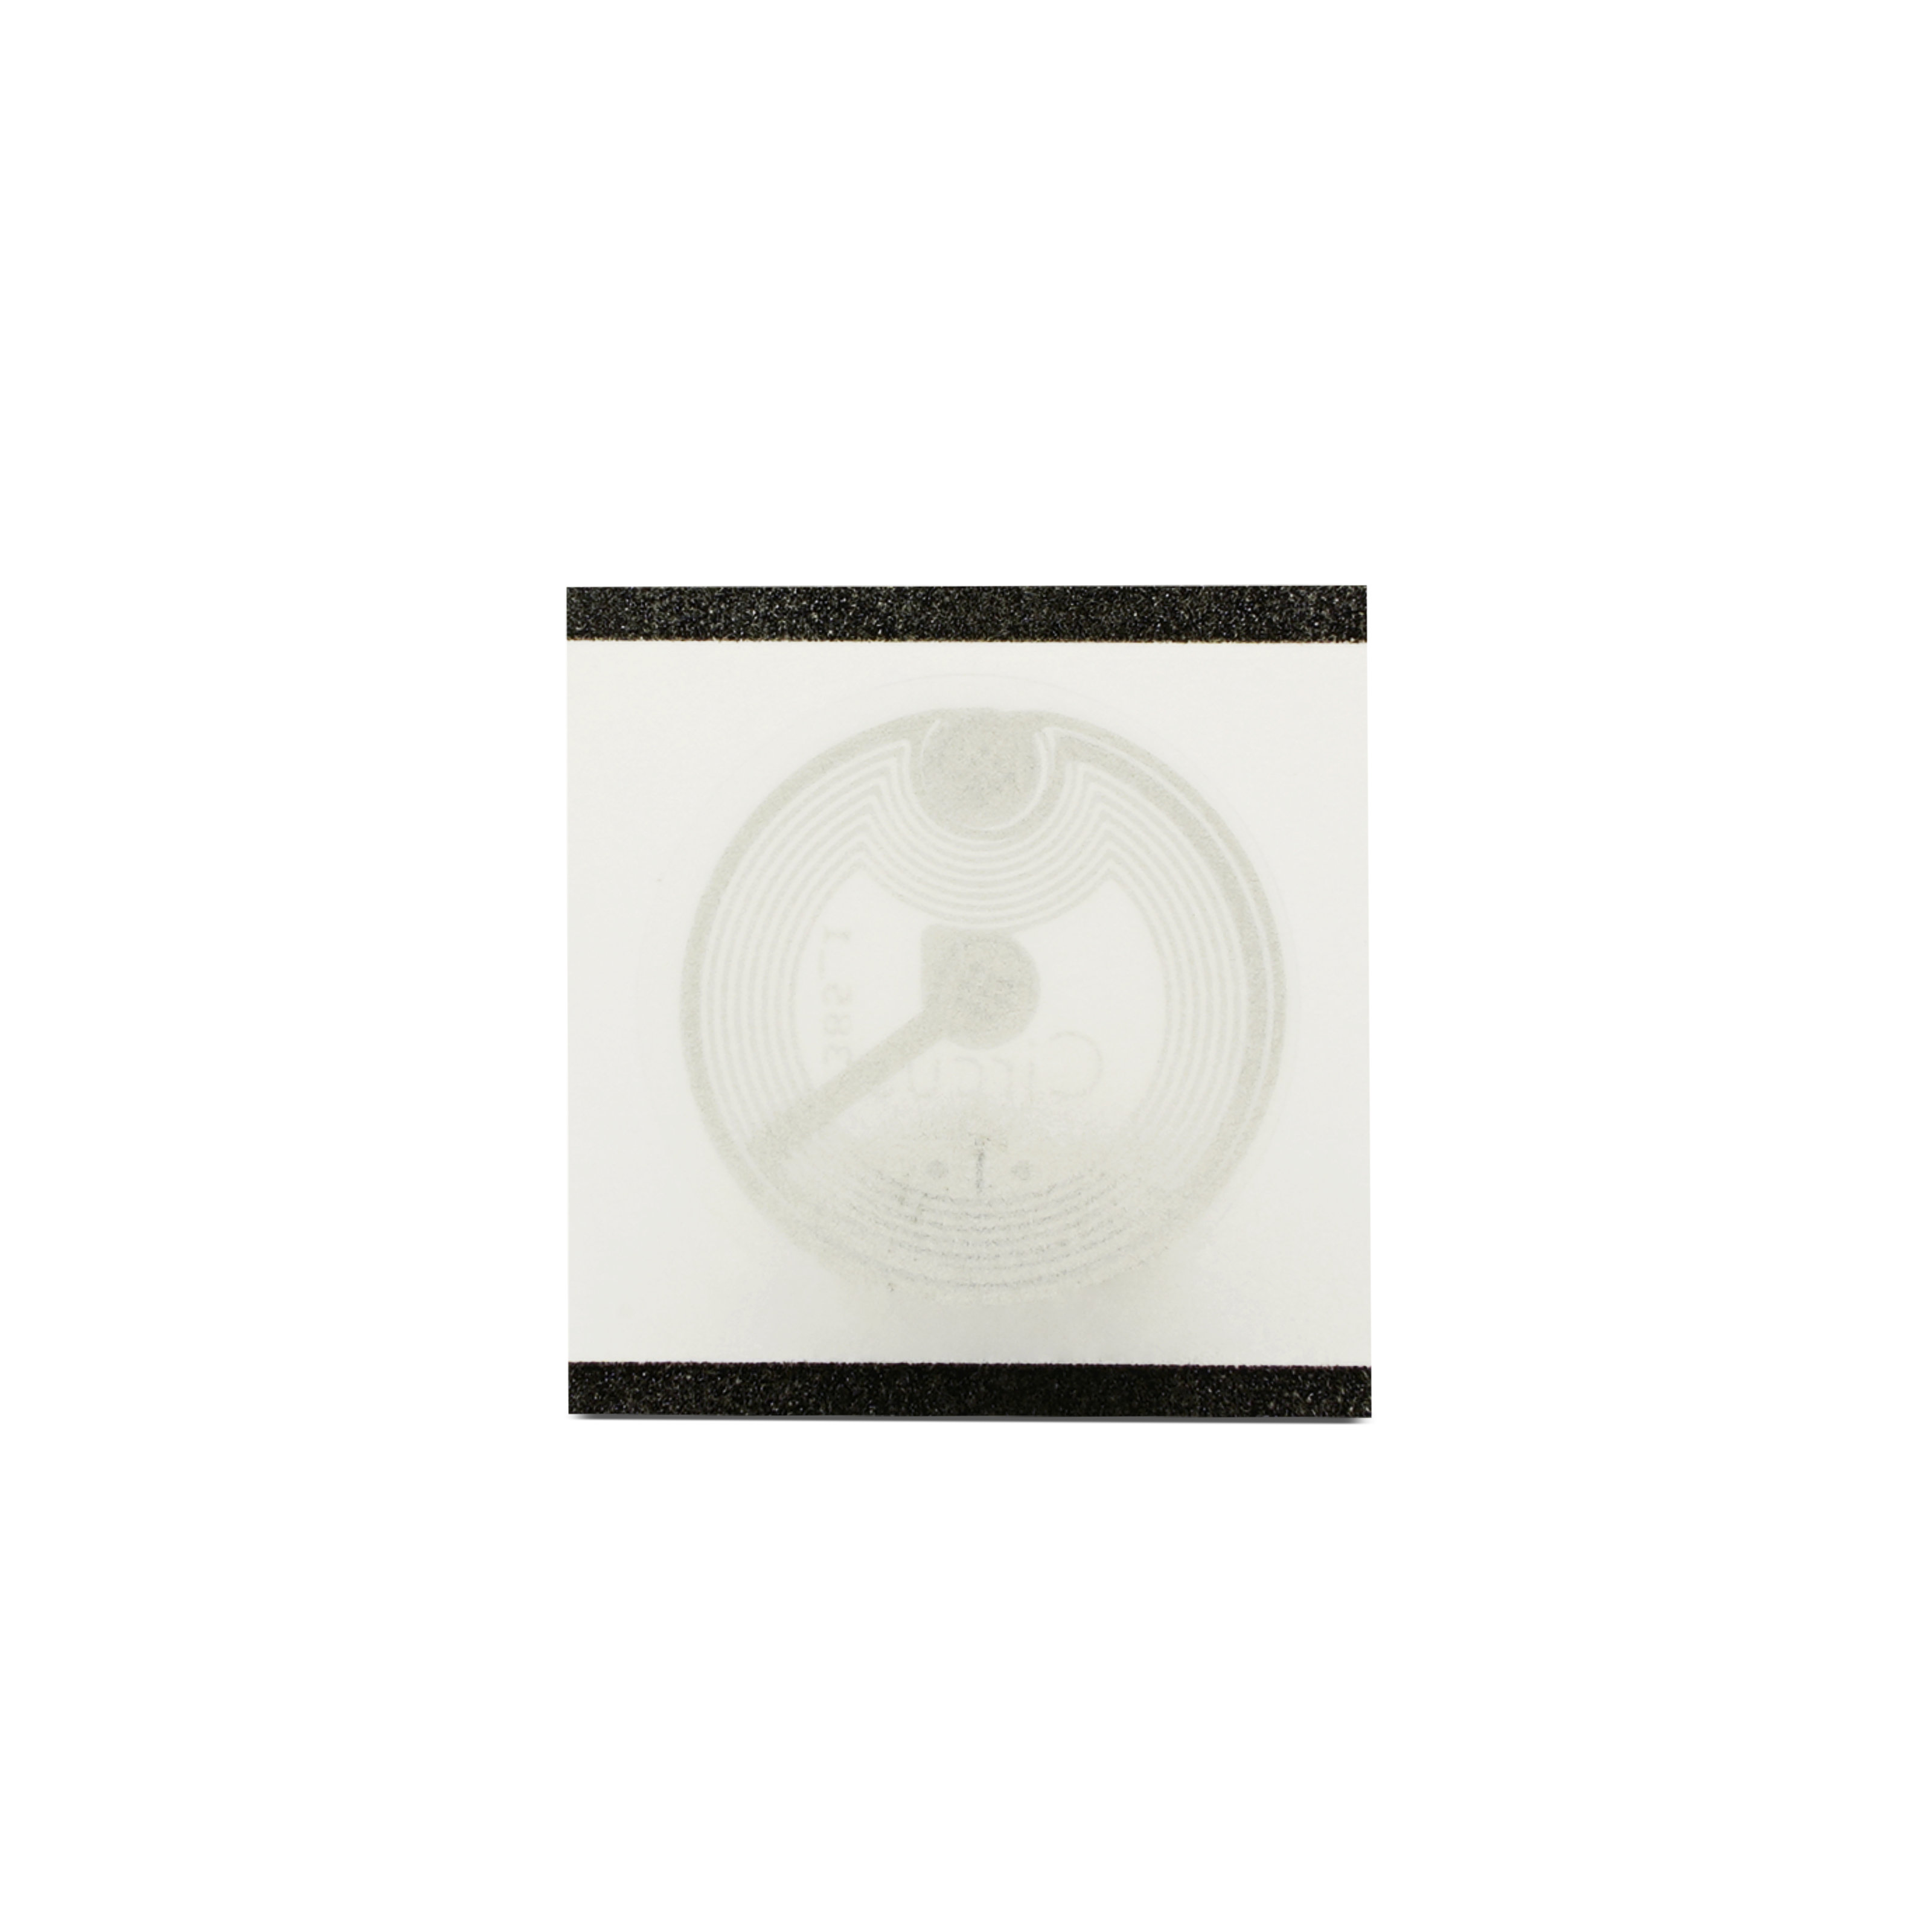 NFC Sticker Circus - 22 mm - NTAG213 - 180 Byte - transparent